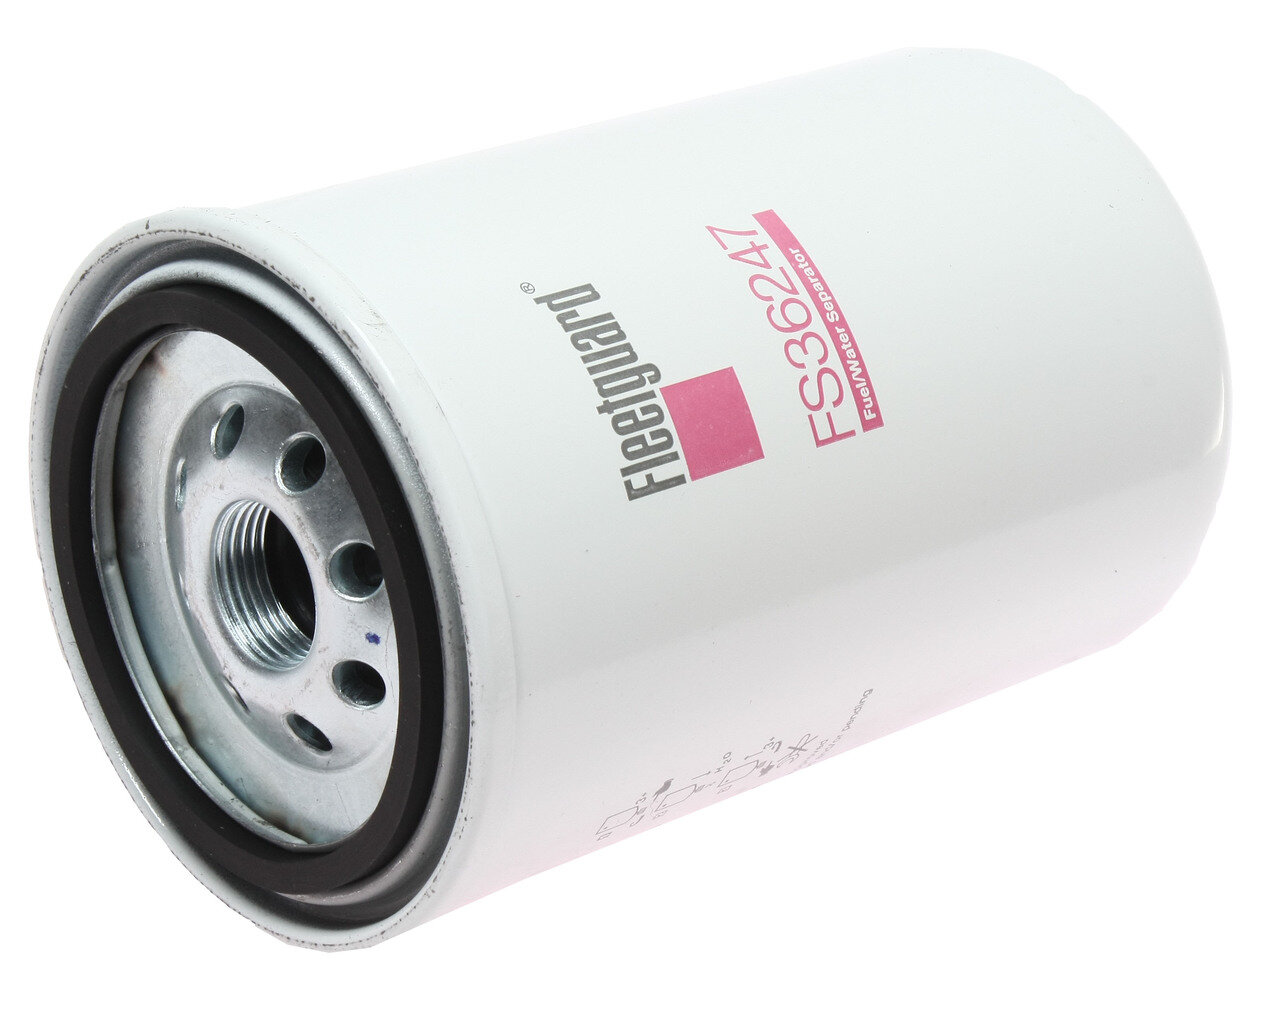 Фильтр топливный DONG FENG КАМАЗ-ЕВРО-3 (дв. CUMMINS) грубой очистки FLEETGUARD FS36247